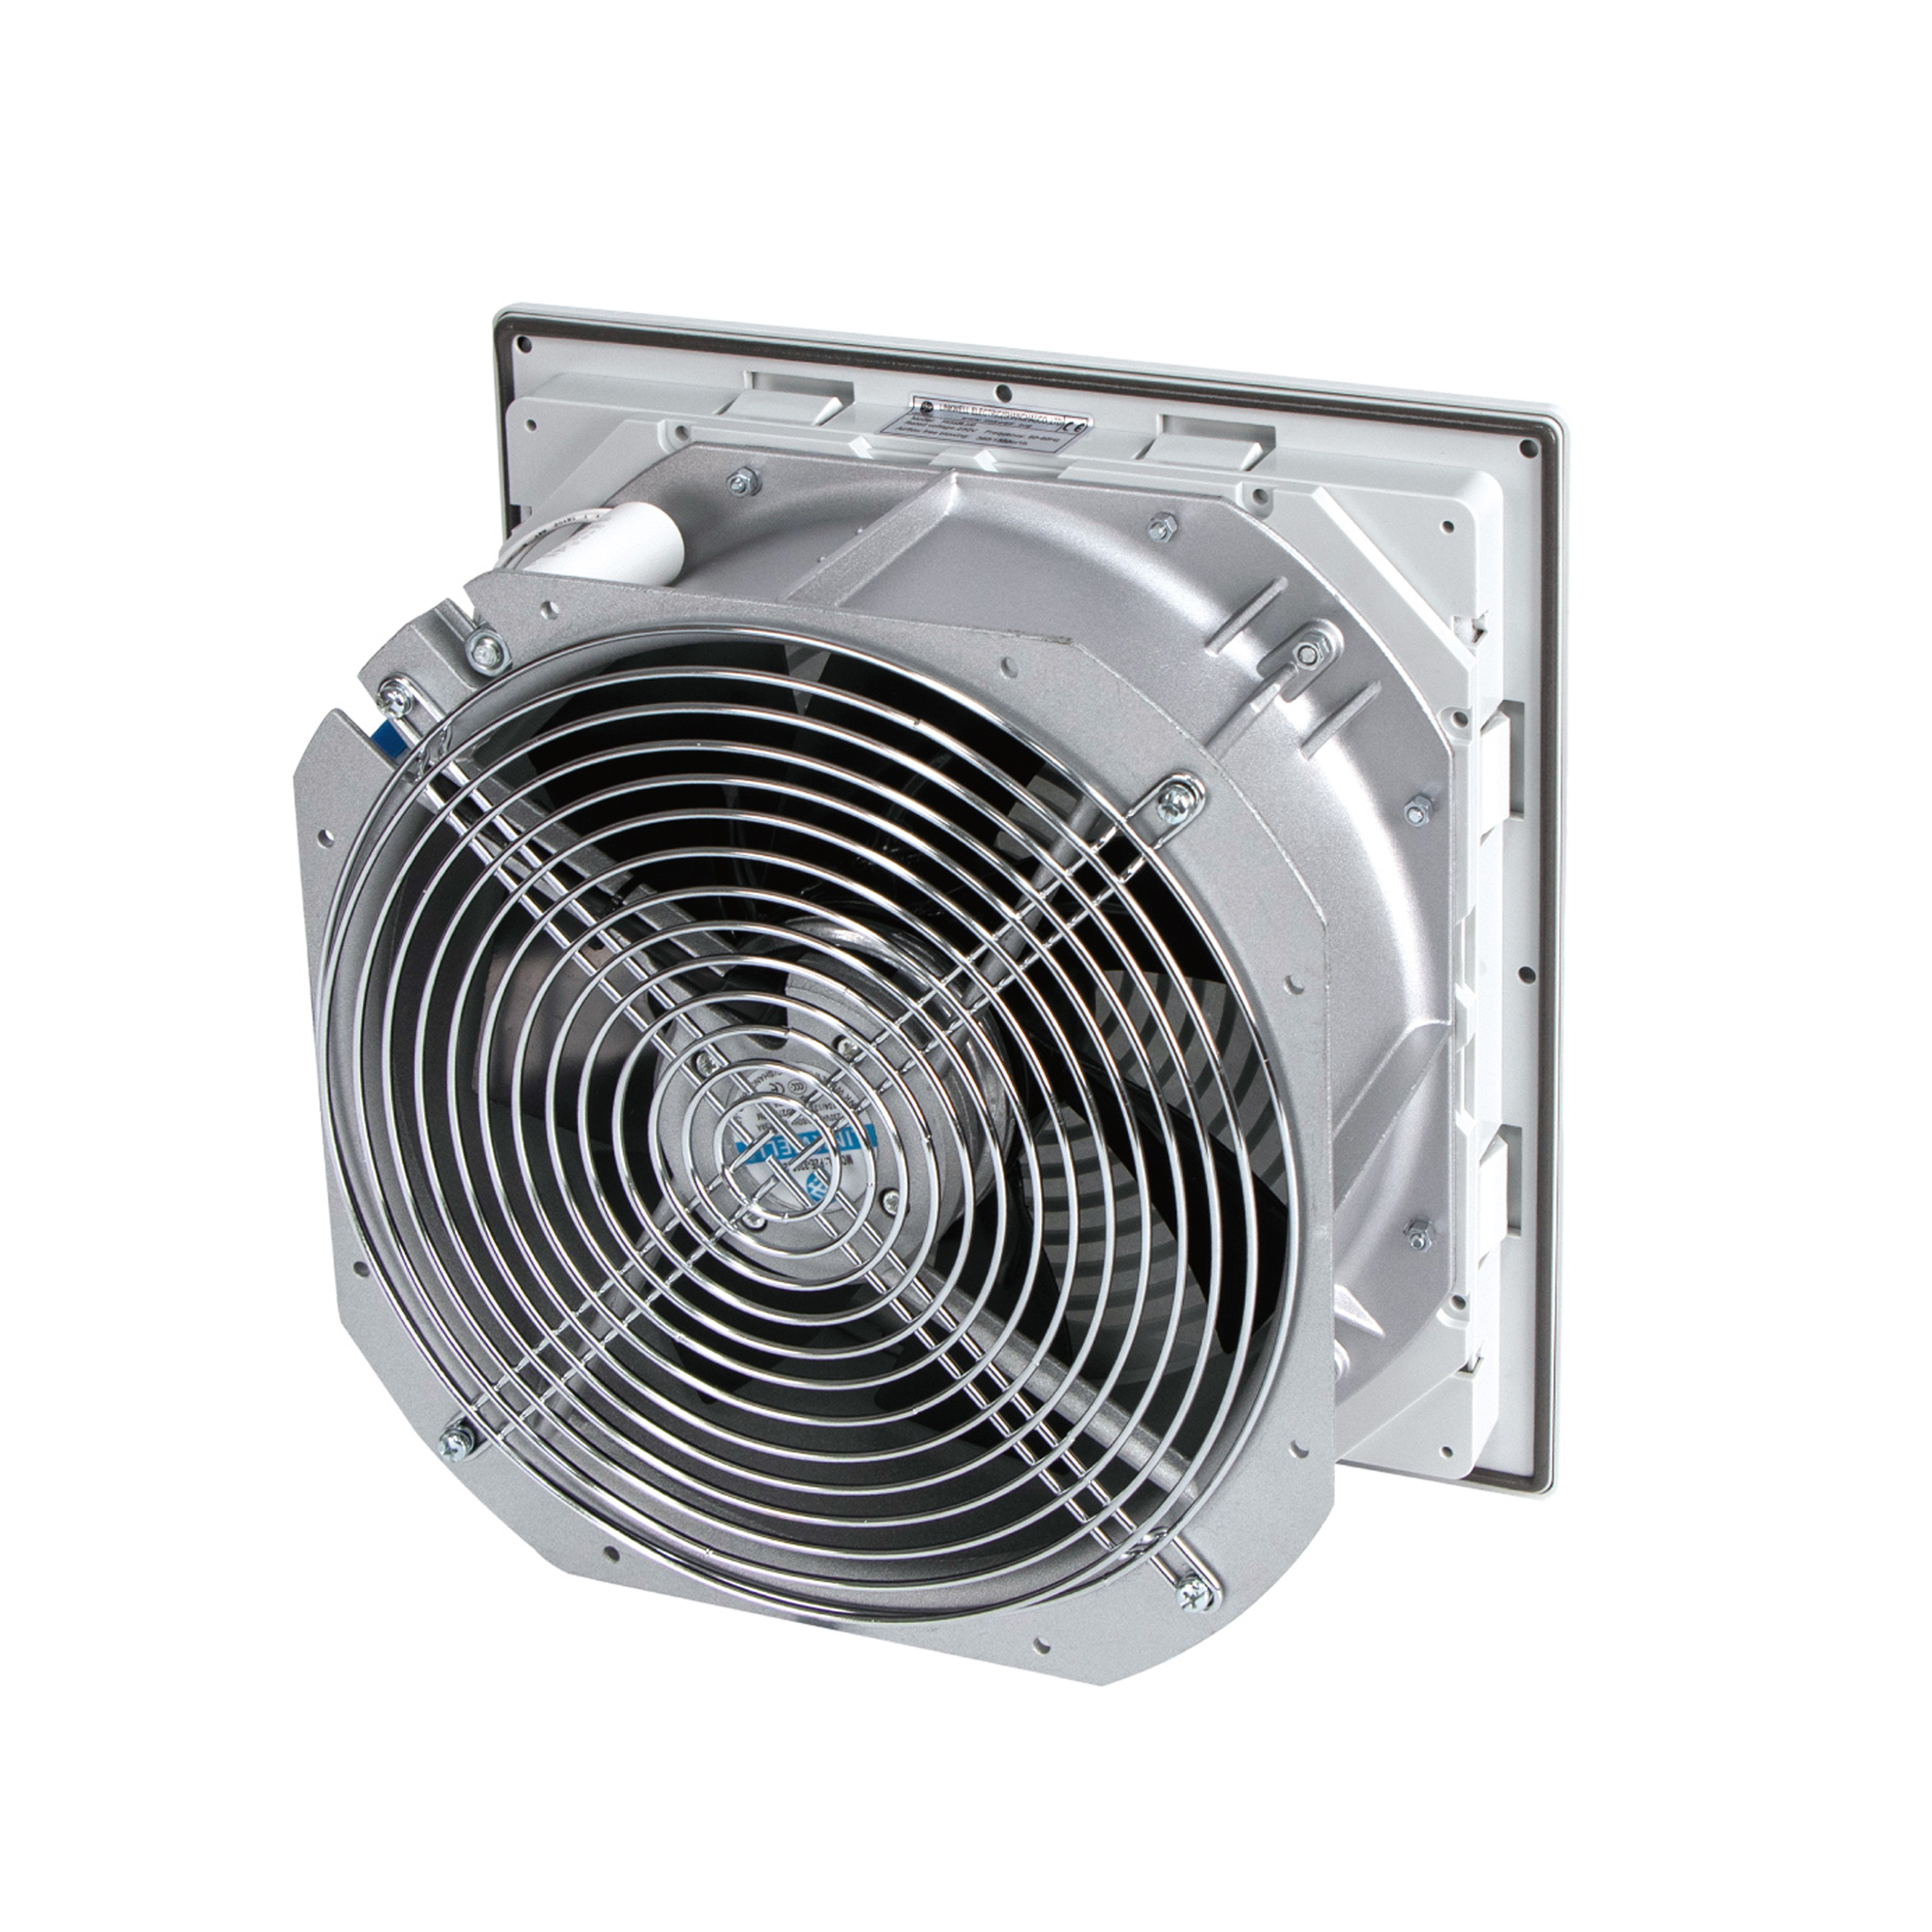 FK5528-Dustproof plastic shutter axial flow fan